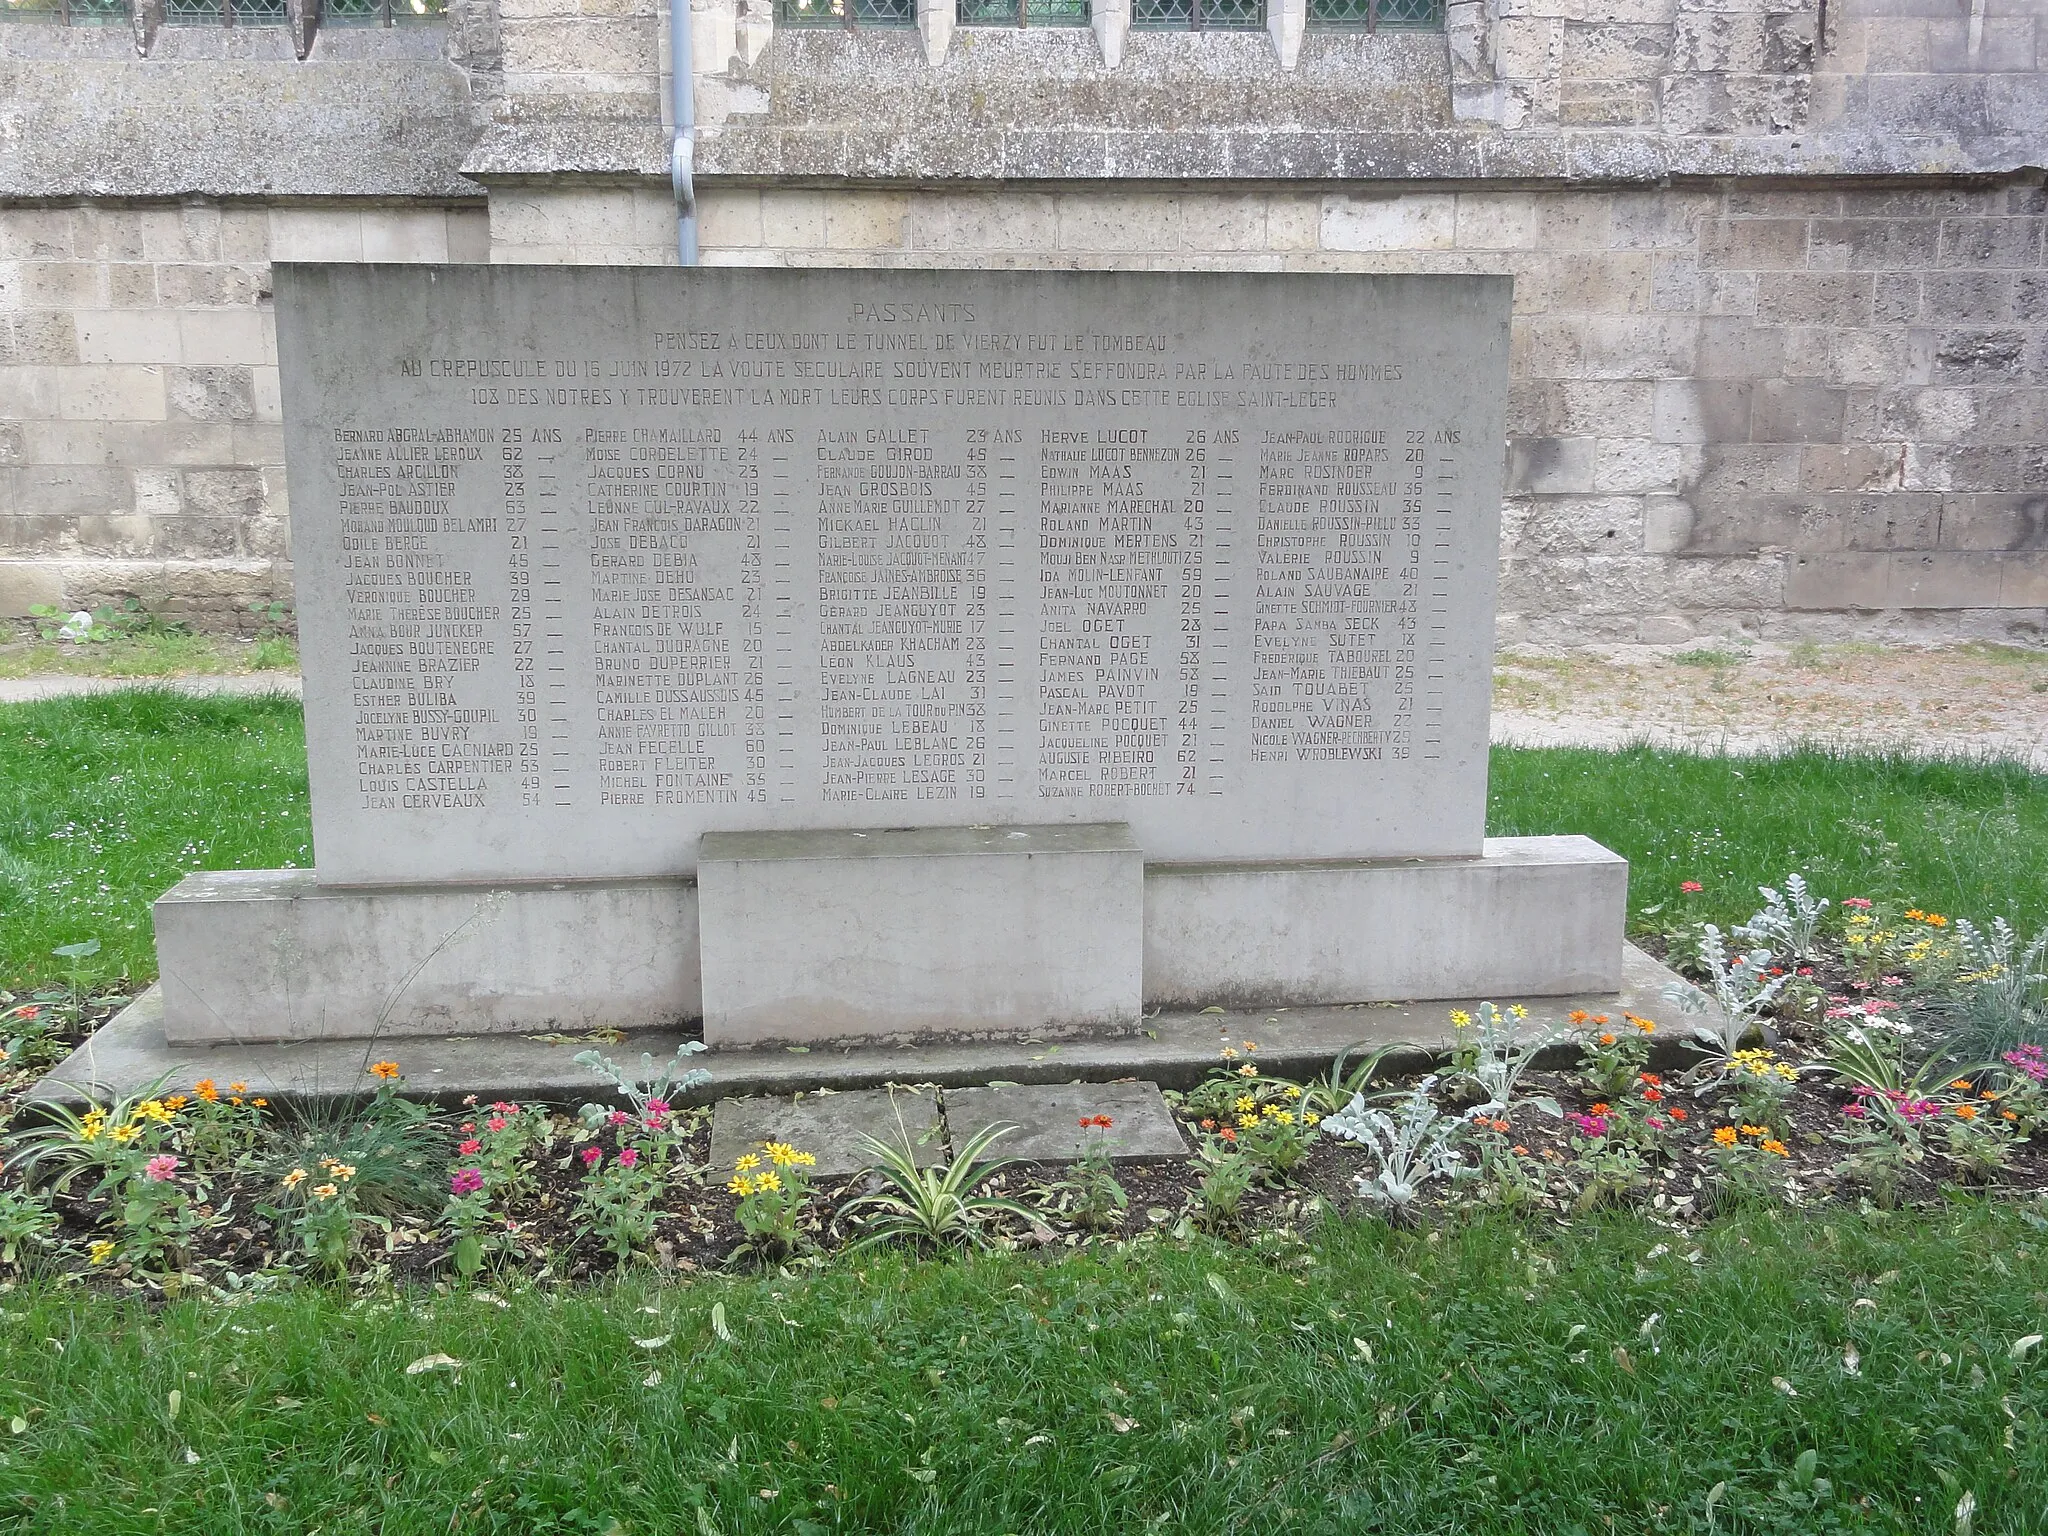 Photo showing: Soissons, mémorial de l'accident du tunnel de Vierzy. Monument en souvenir des victimes de l'effondrement du tunnel survenu le 16 juin 1972. Ce monument se trouve à côté de l'église Saint-Léger de Soissons.